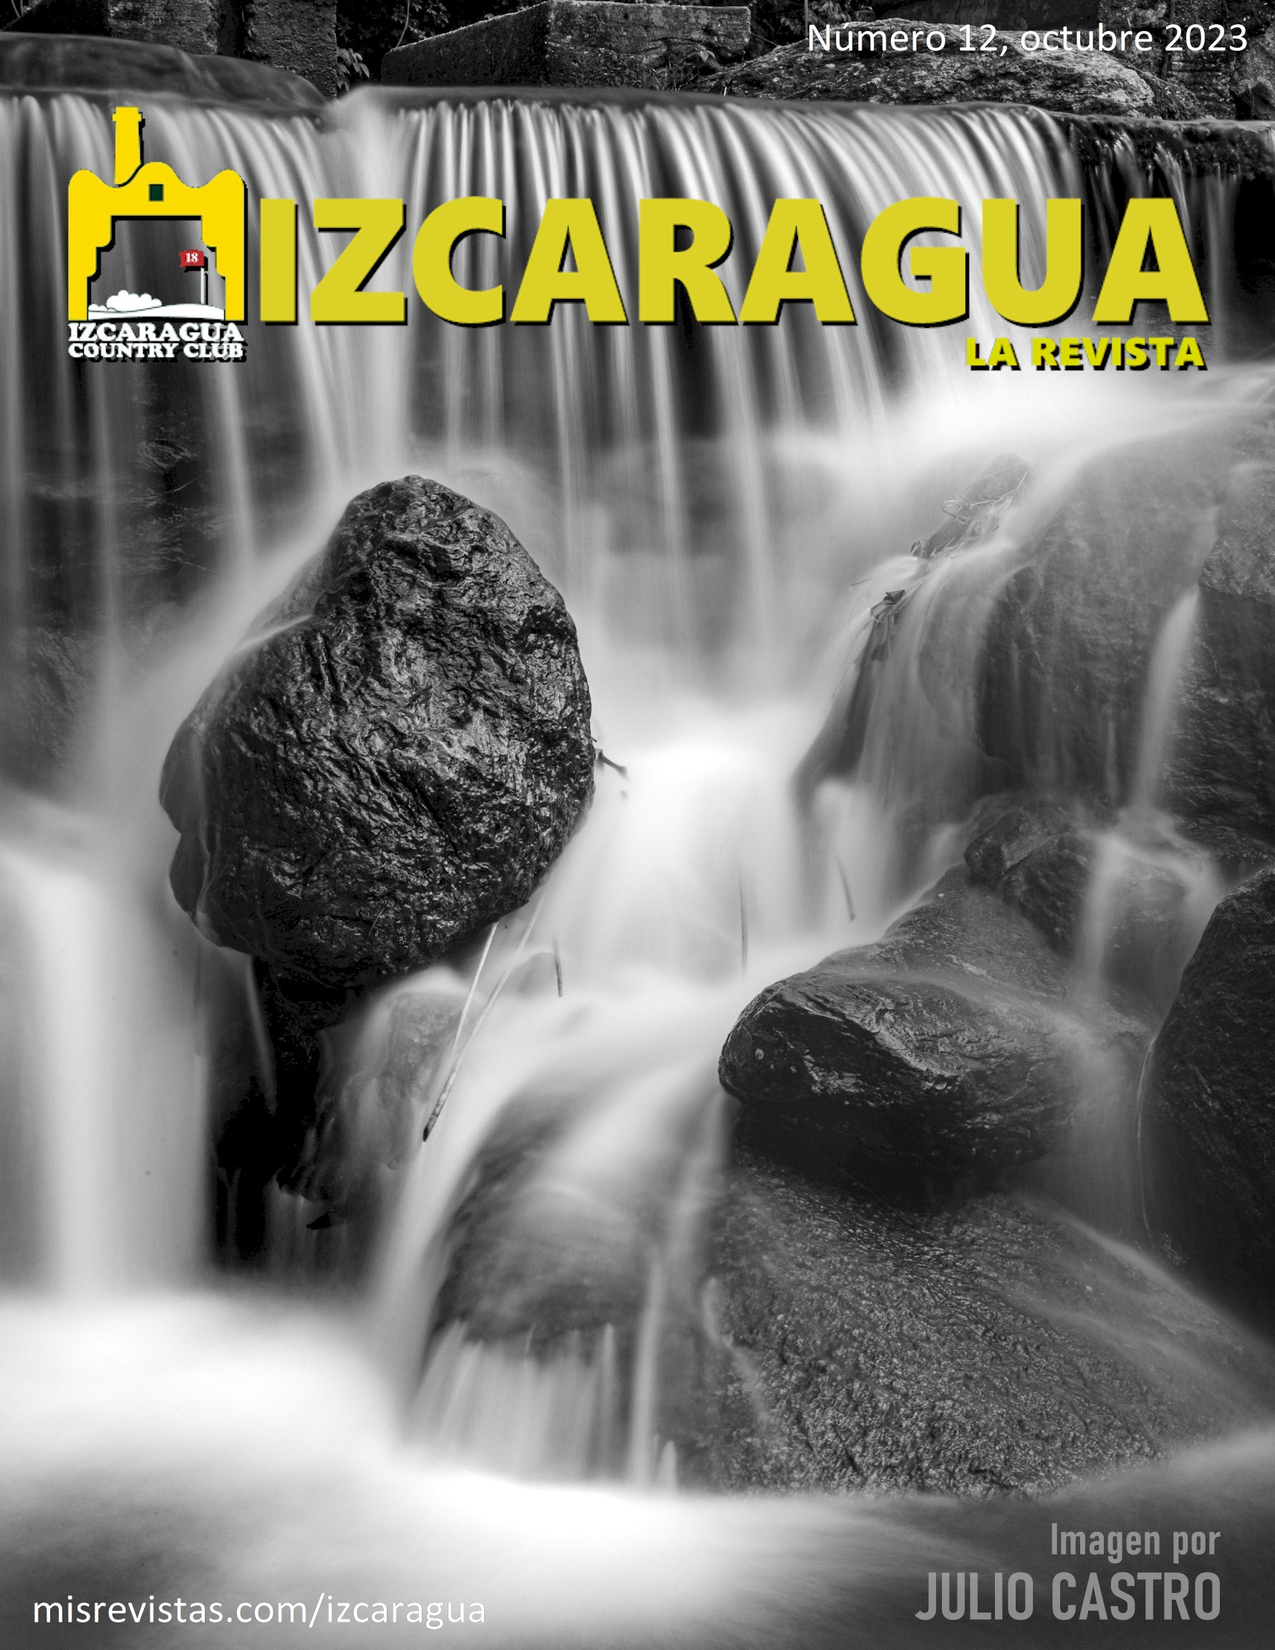 IZC Izcaragua Country Club Revista 12 Octubre 2023